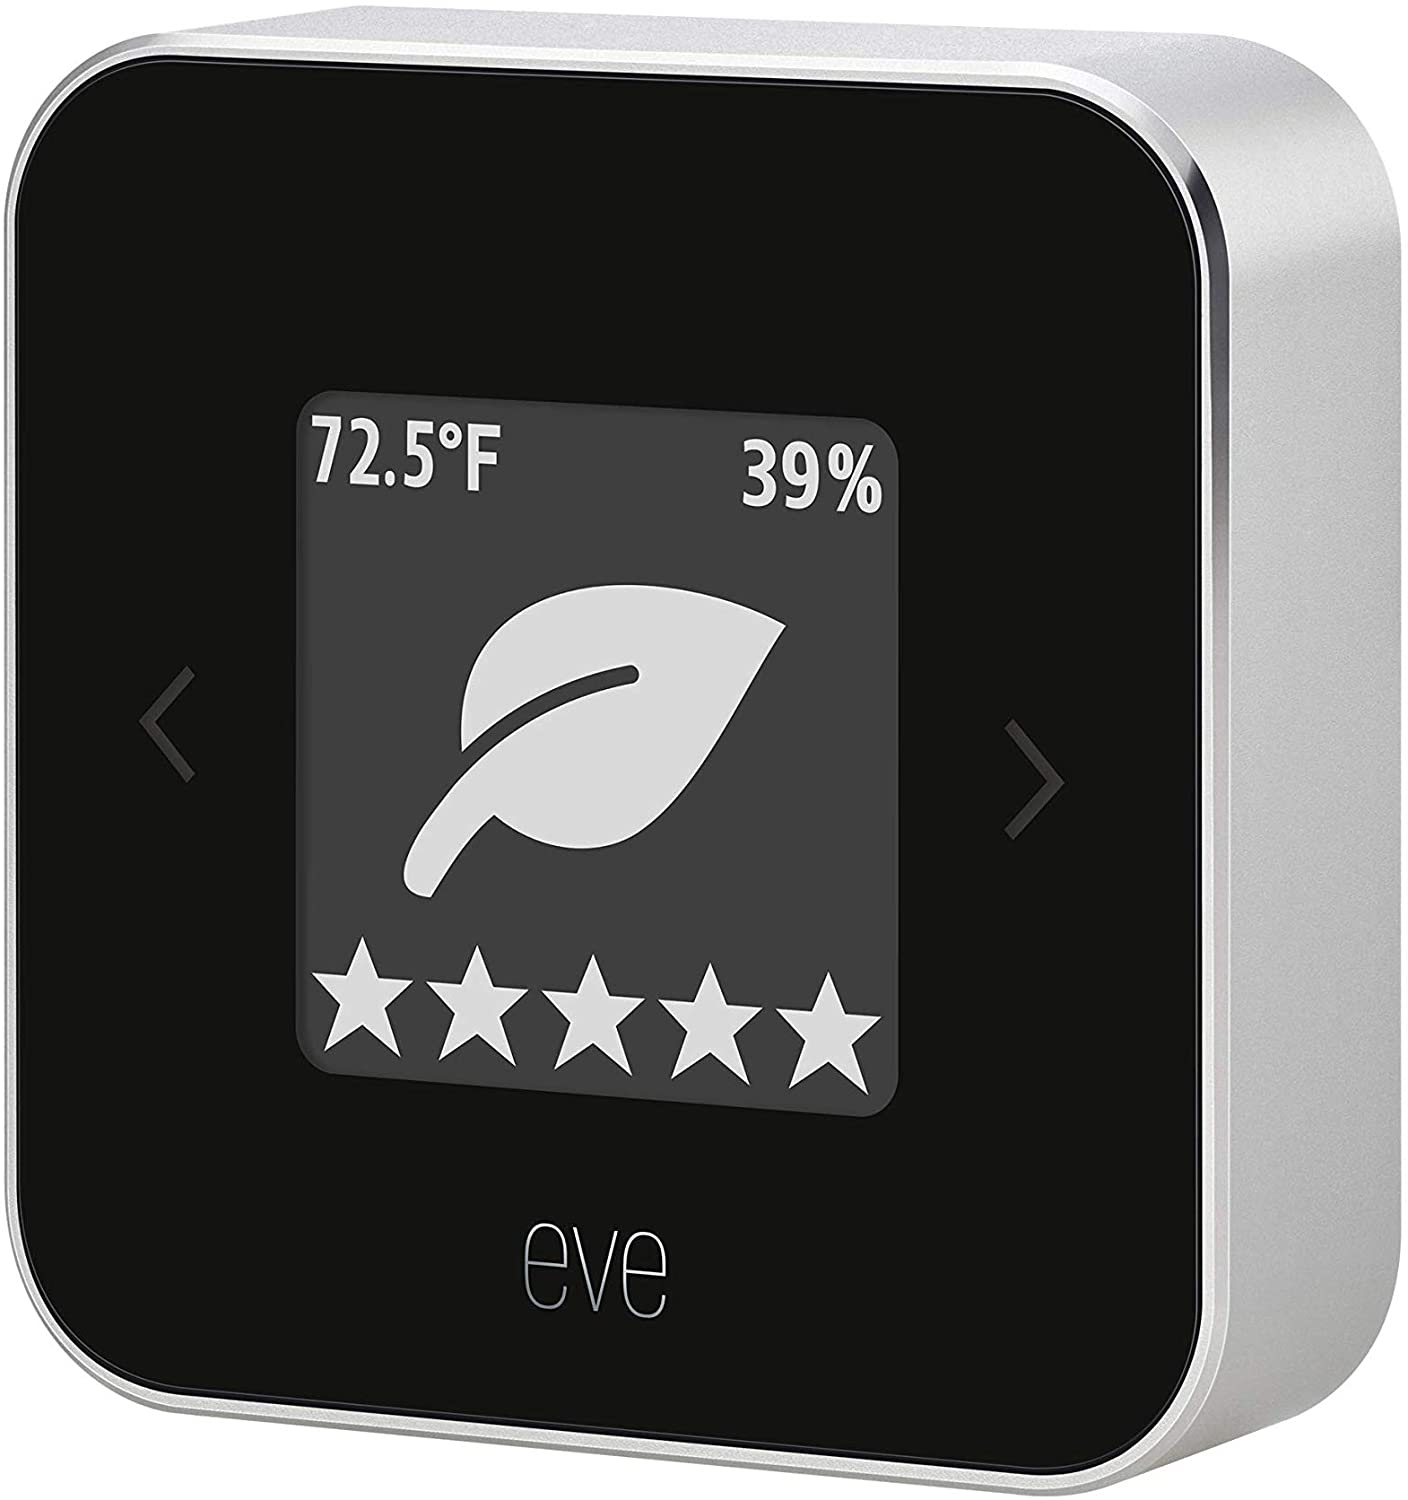 Eve room sensor